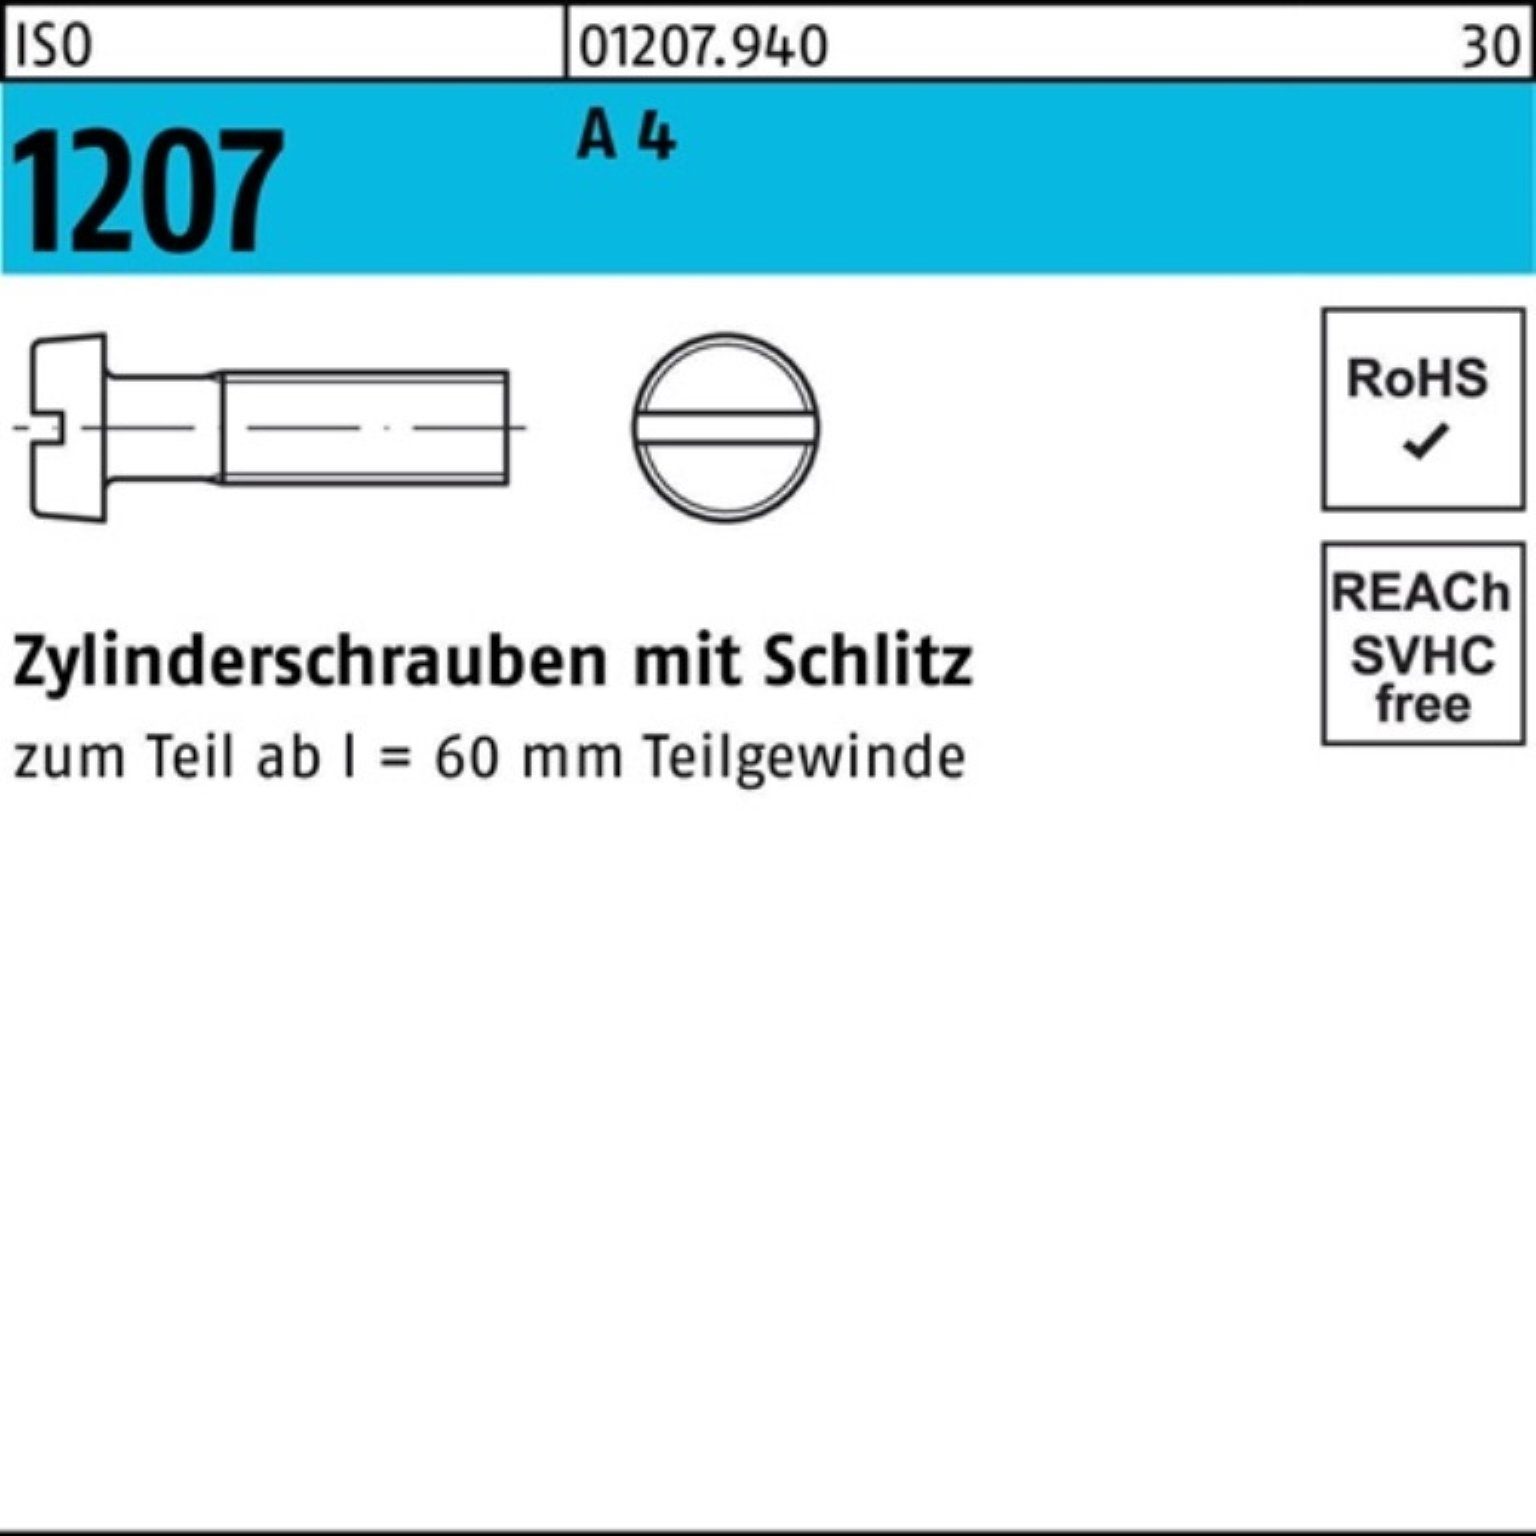 Reyher Zylinderschraube 200er Schlitz Stück 200 M5x Zylinderschraube Pack 30 1207 A 4 ISO ISO